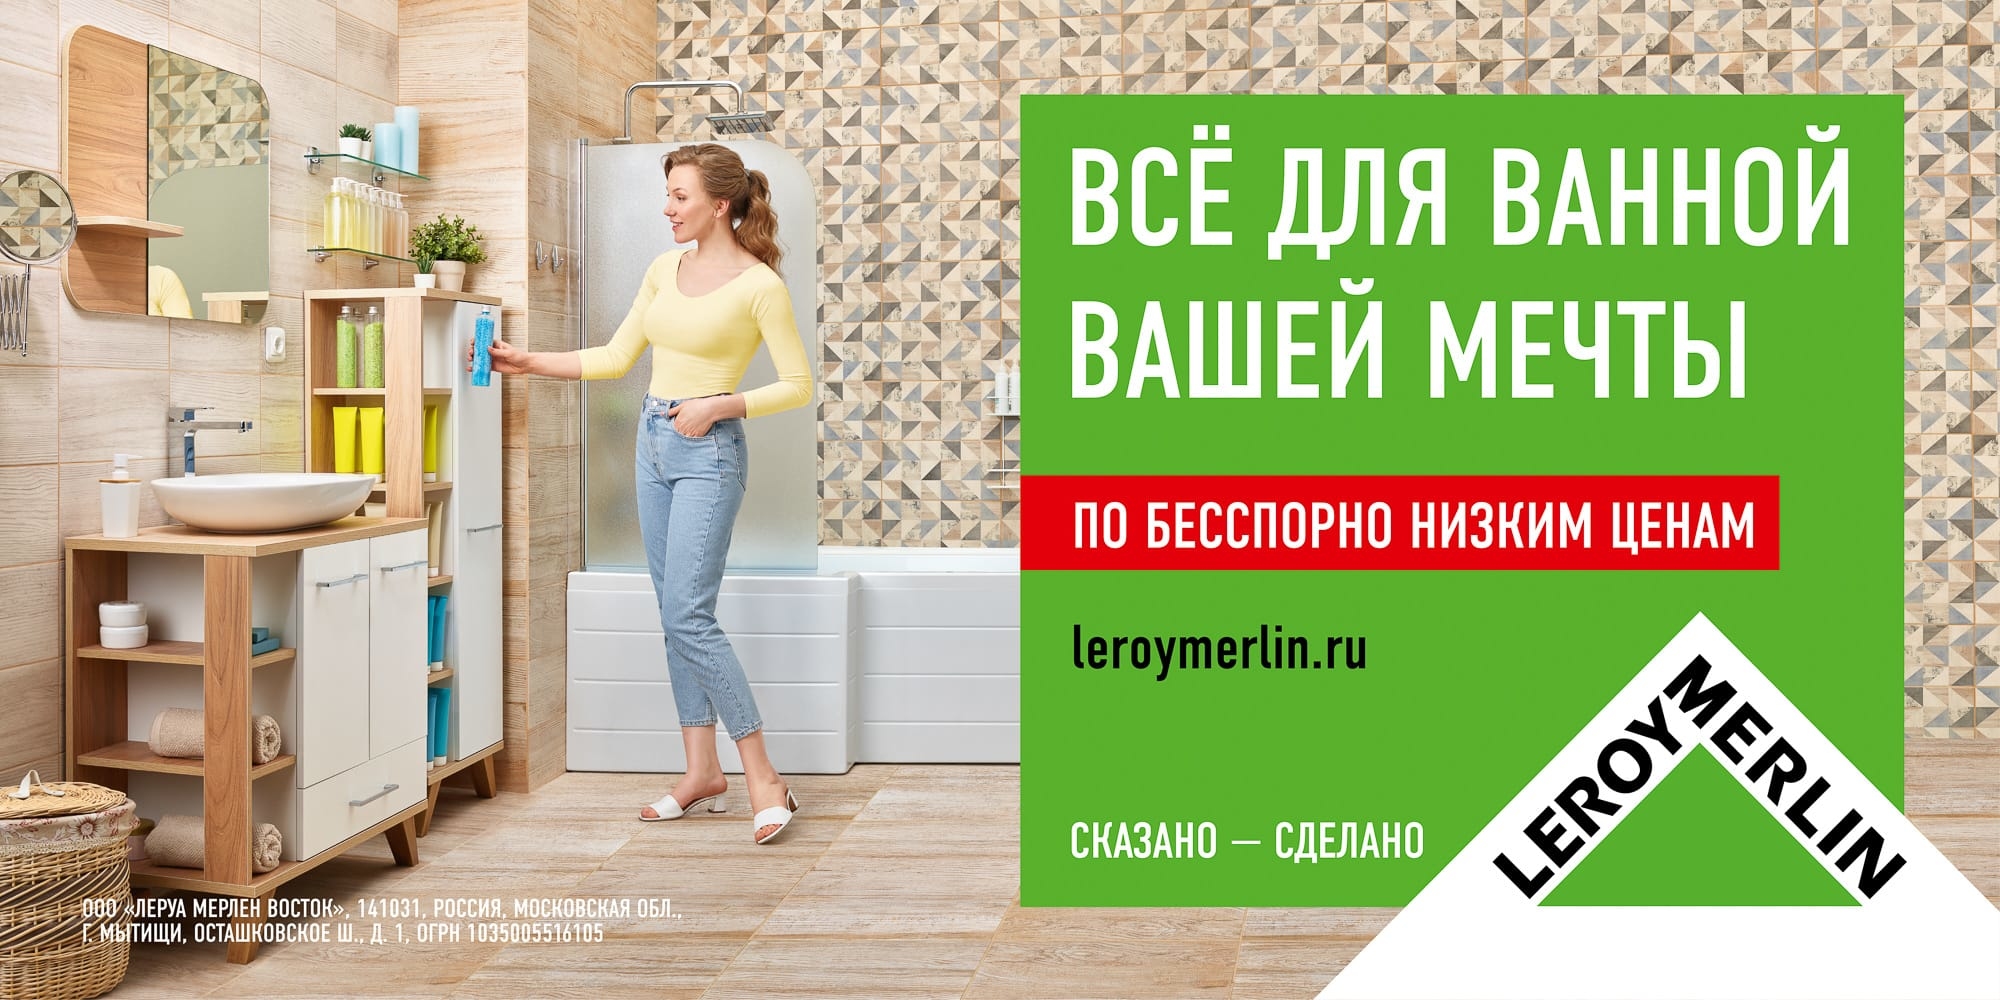 Огрн 1035005516105. Леруа Мерлен реклама. Реклама мебели для ванных комнат. Продающие слоганы для рекламы мебели. Мебель для ванной баннер.